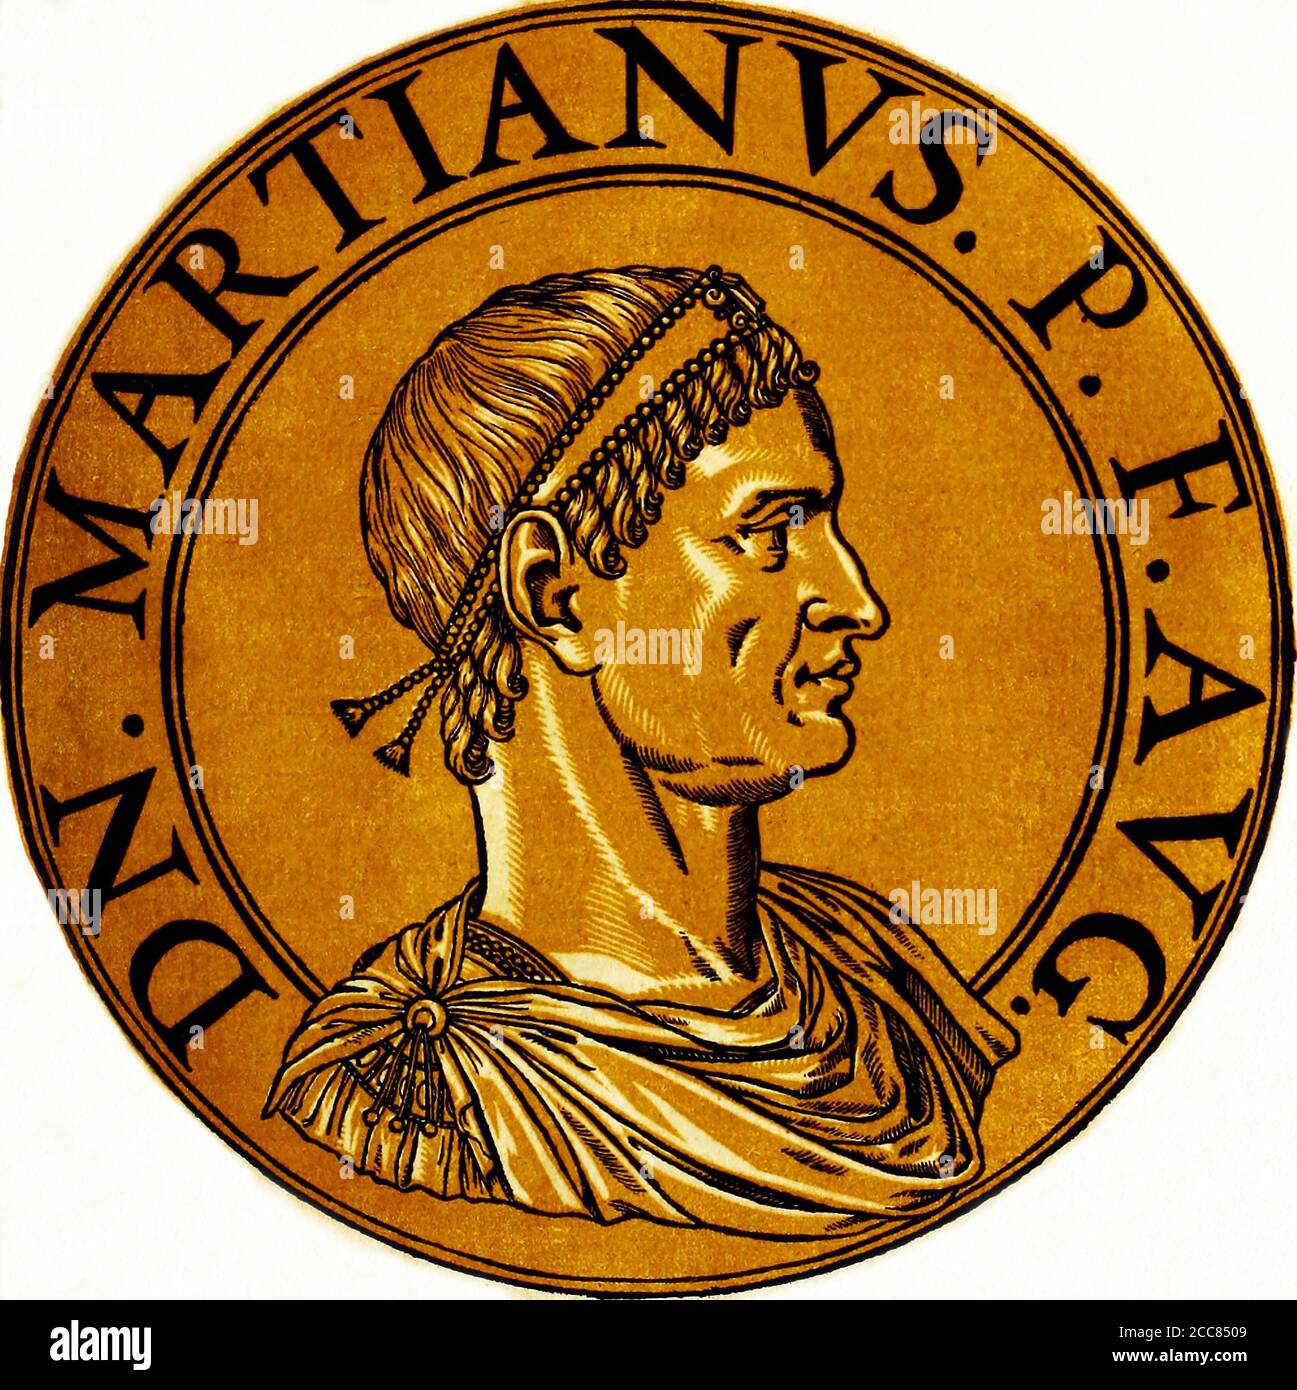 Türkei / Byzanz: Marcian (392-457), byzantinischer Kaiser, aus dem Buch Icones imperatorvm romanorvm (Ikonen der römischen Kaiser), Antwerpen, 1645. Marcian war der Sohn eines Soldaten aus Illyricum oder Thrakien, und verbrachte einen Großteil seines frühen Lebens als unbemerkenswerter Soldat. Er diente unter den mächtigen Alan-Generälen Ardabur und Aspar in Afrika, wo er von den Vandalen gefangen genommen wurde. Rückkehr nach Konstantinopel, wurde er Senator und wurde später als Gemahl zu Pulcheria, Schwester des kürzlich verstorbenen Kaisers Theodosius II.. Marcian wurde Kaiser des Oströmischen Reiches in 450. Stockfoto